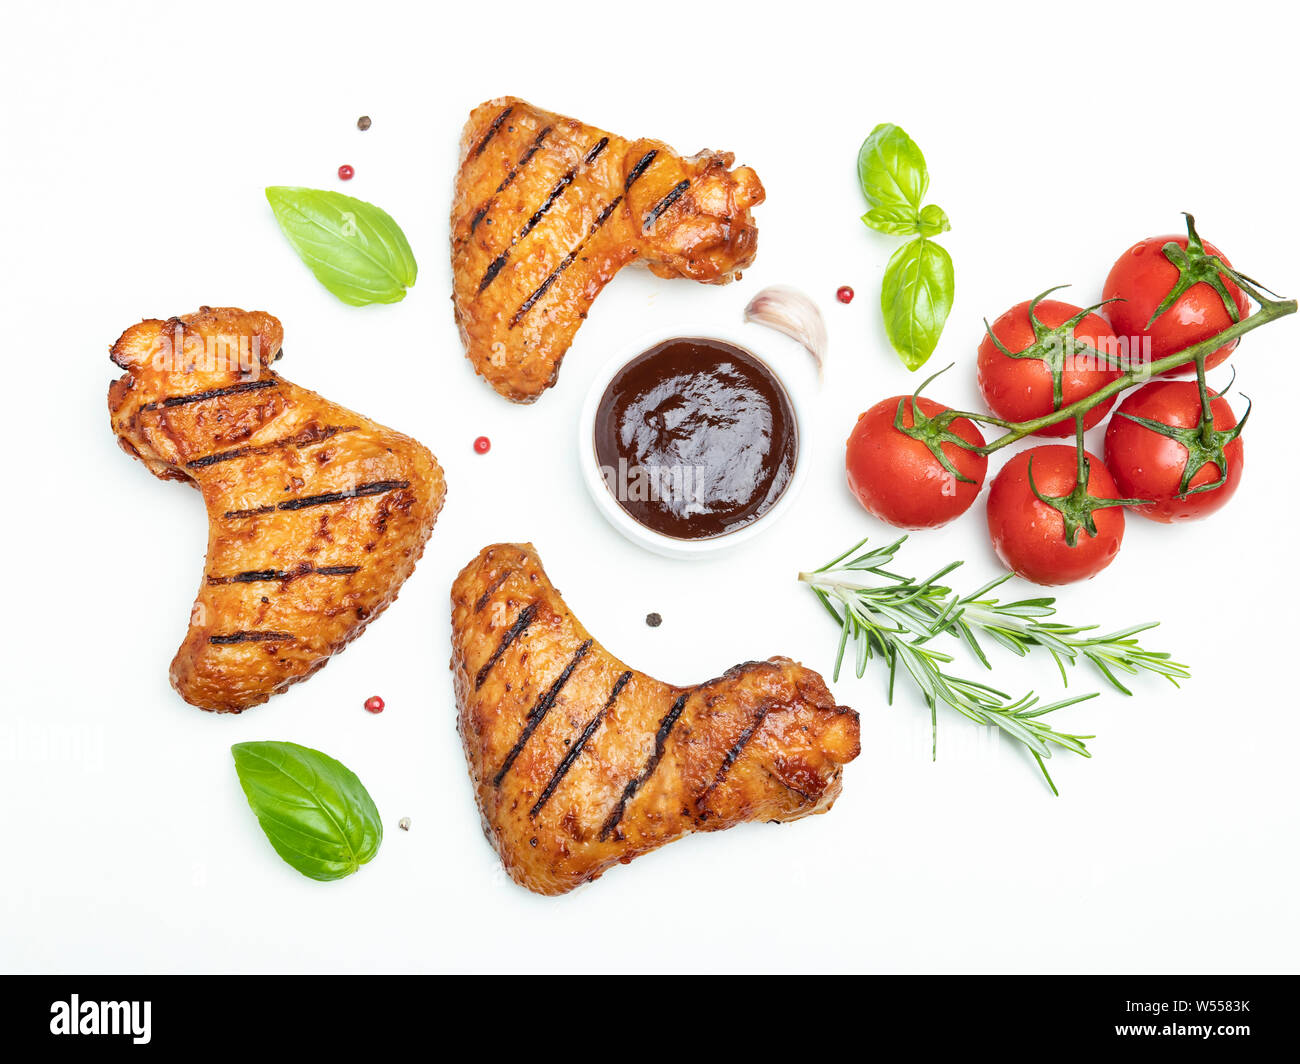 Ailes de poulet grillées, sauce barbecue brown rosemary basilic tomates épices sur fond blanc Banque D'Images